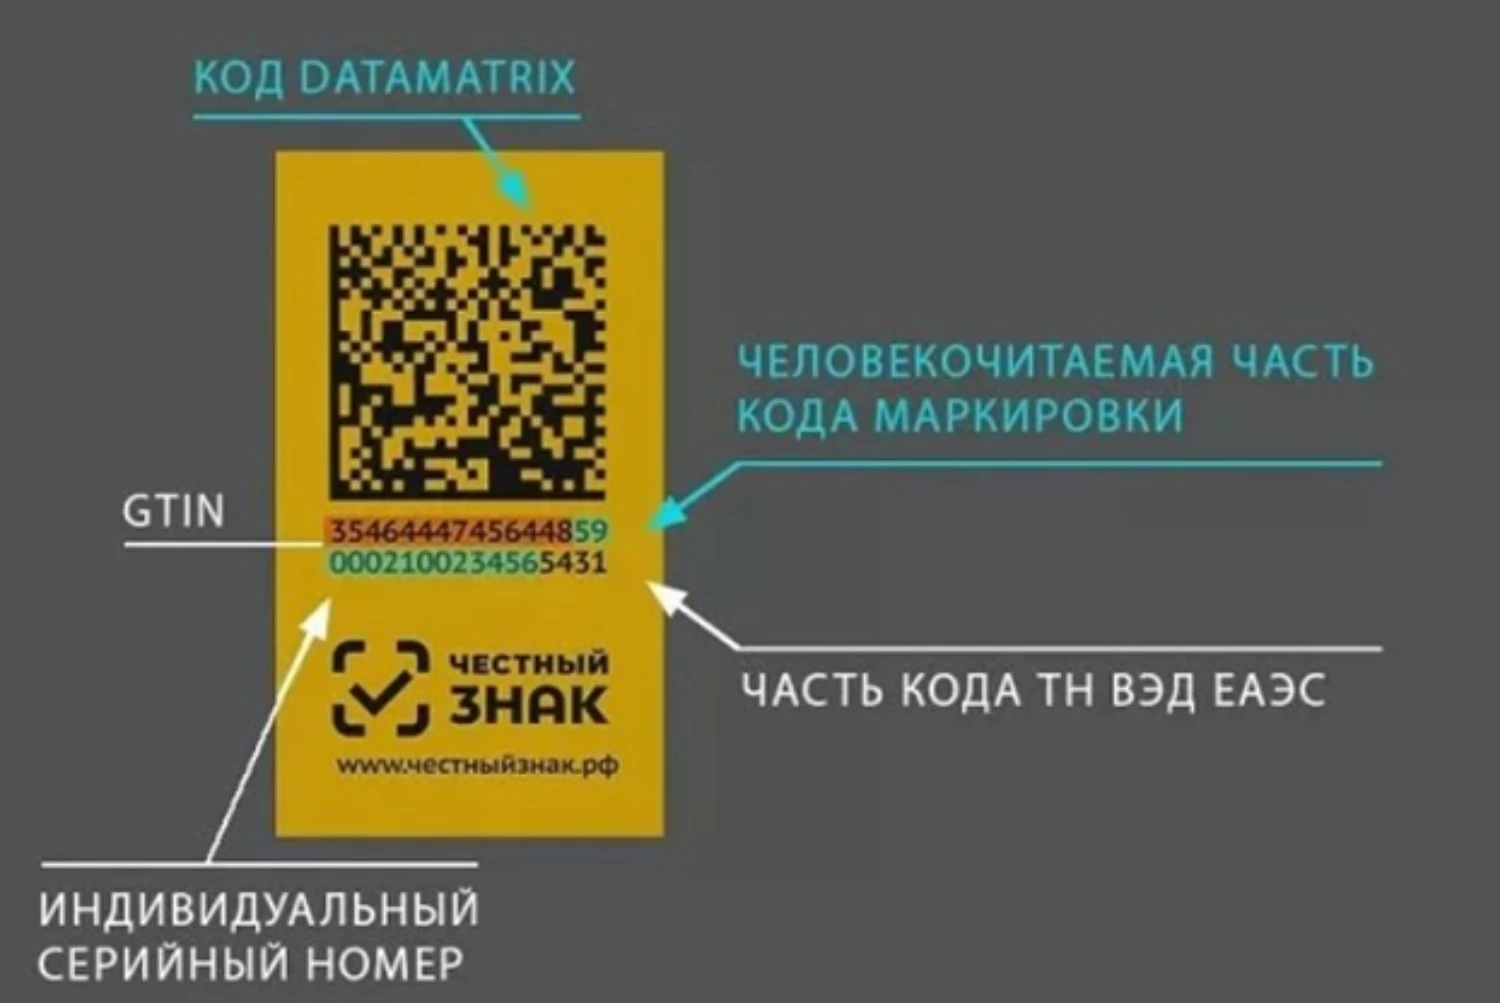 Дата код что это. Data Matrix коды. Пример кода маркировки. Код маркировки DATAMATRIX. Маркировка честный знак.